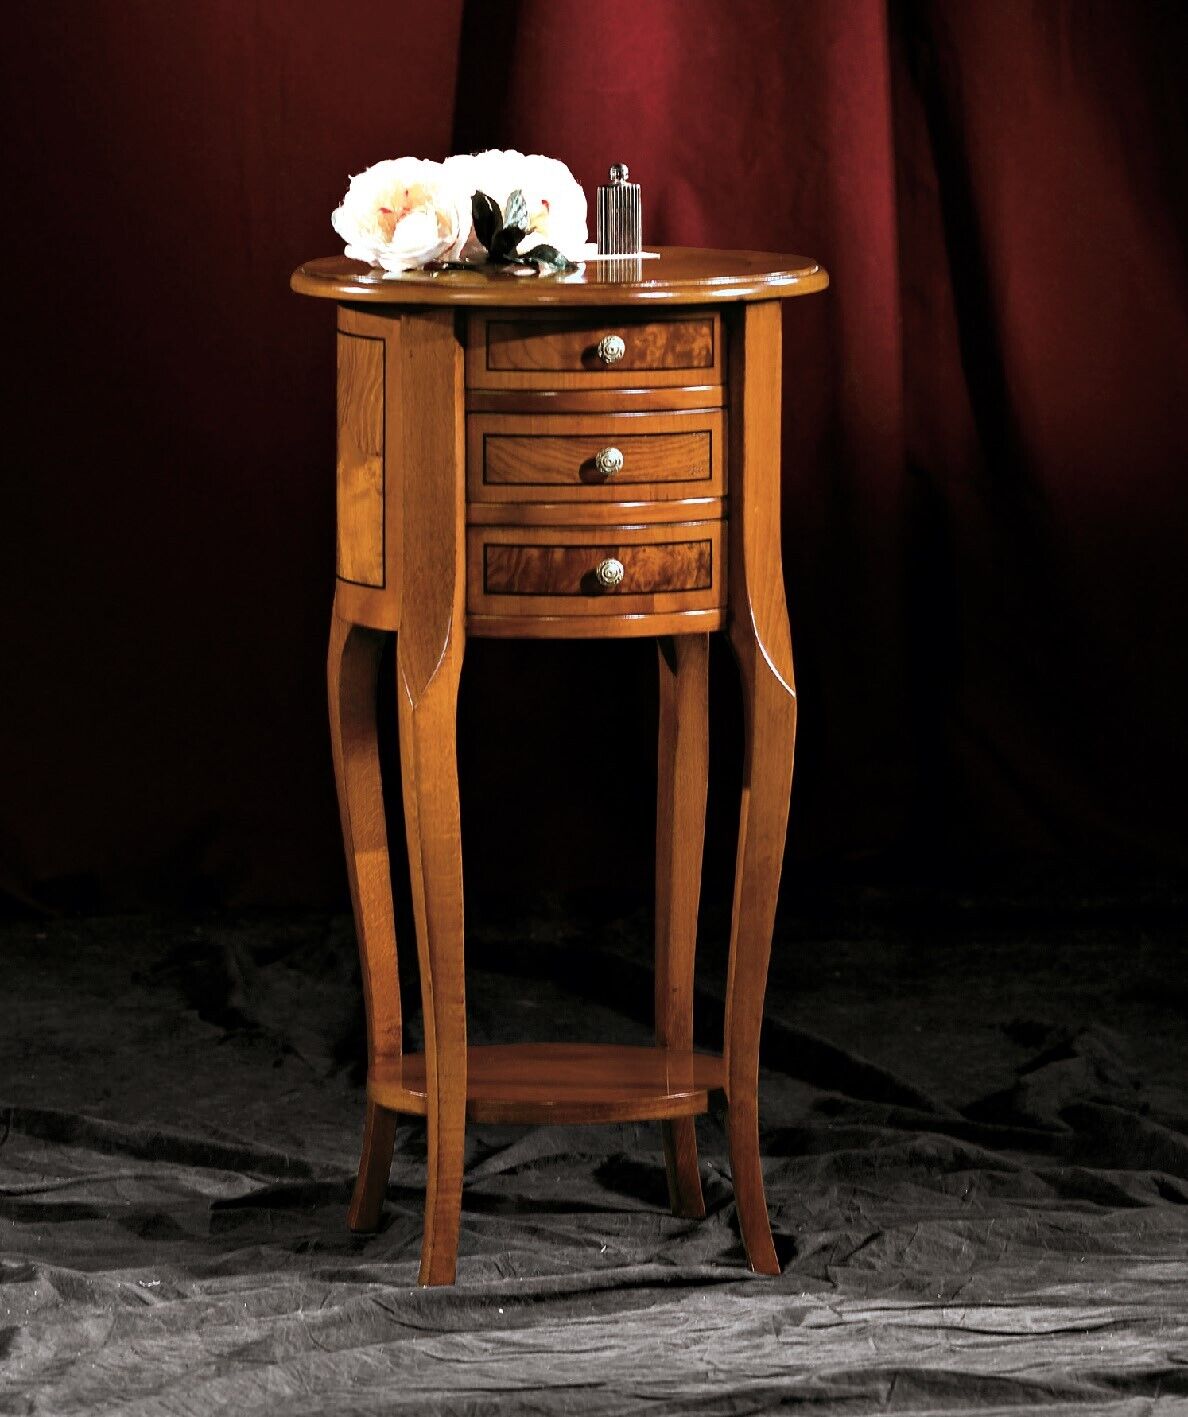 Beistelltisch Couchtisch Oval Kommode Tische Konsole Design Holz Tisch Neu